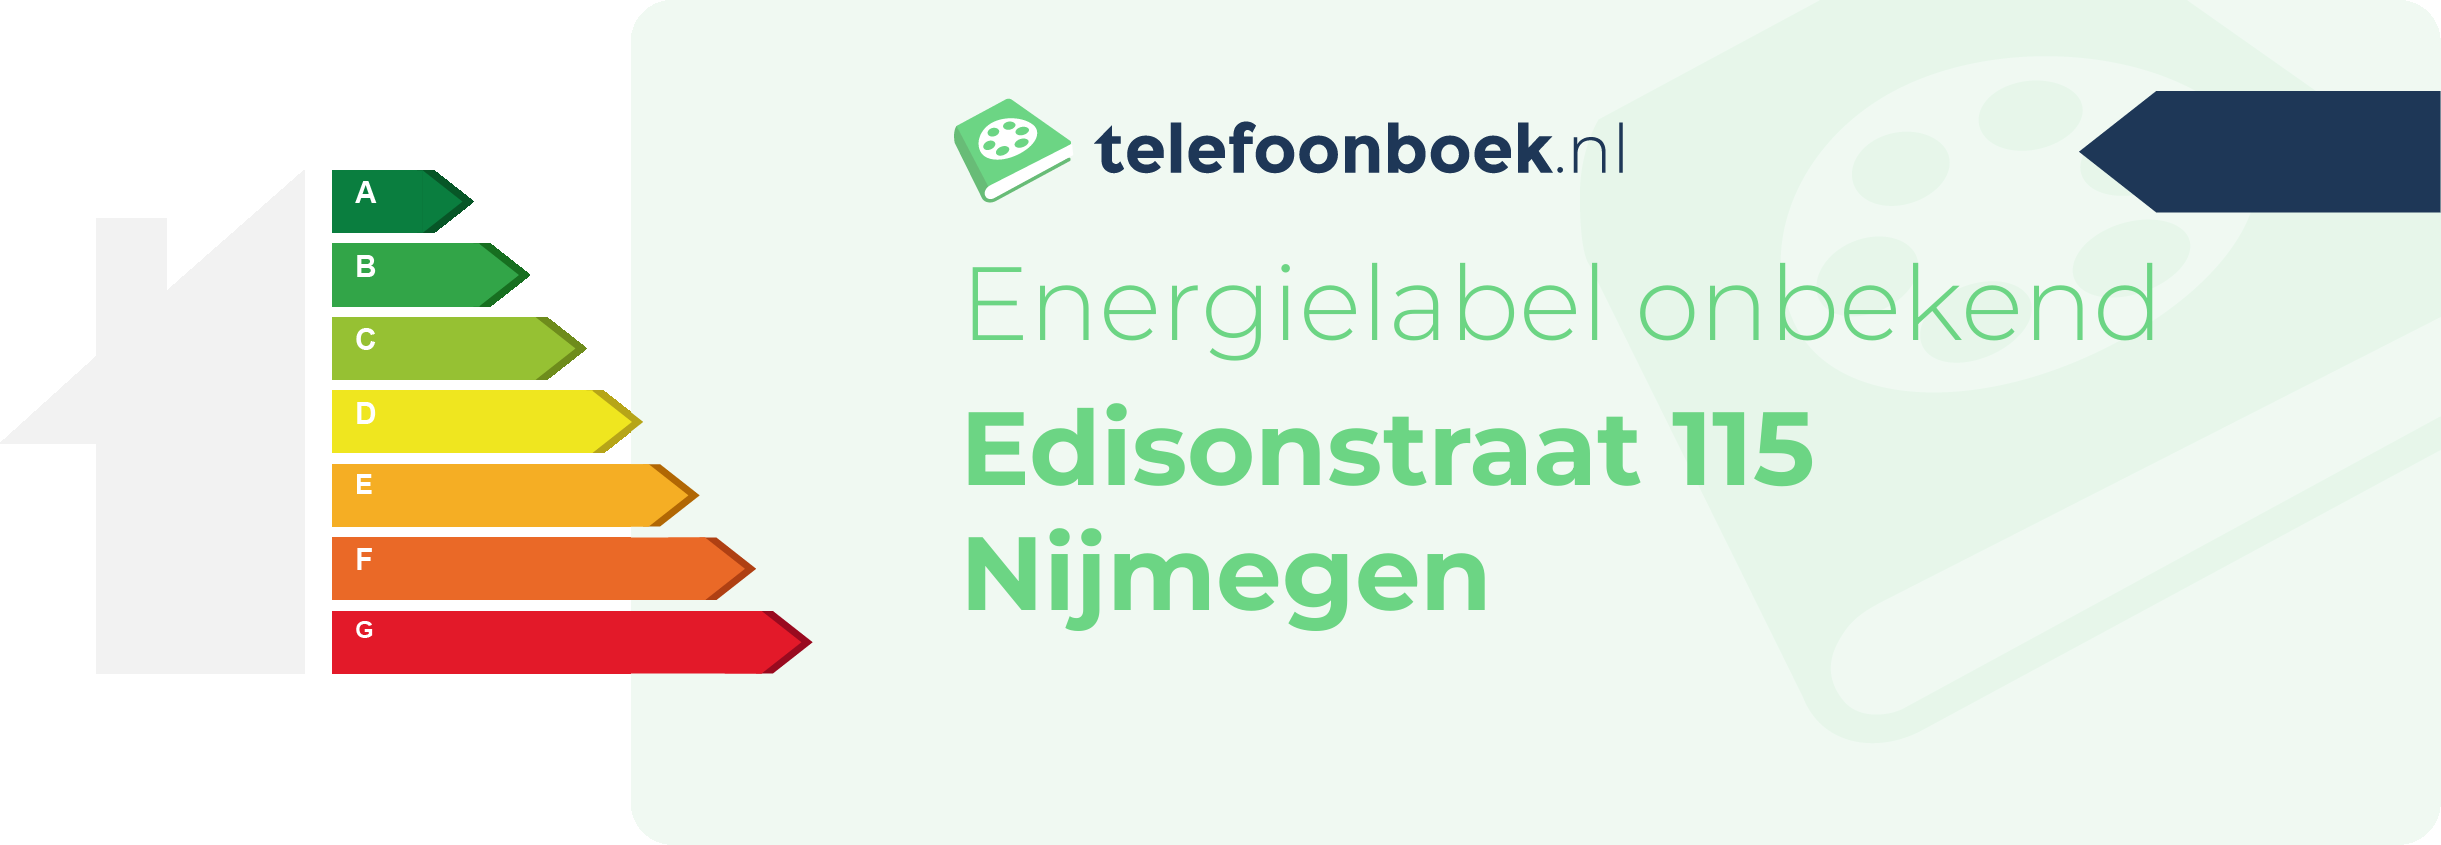 Energielabel Edisonstraat 115 Nijmegen